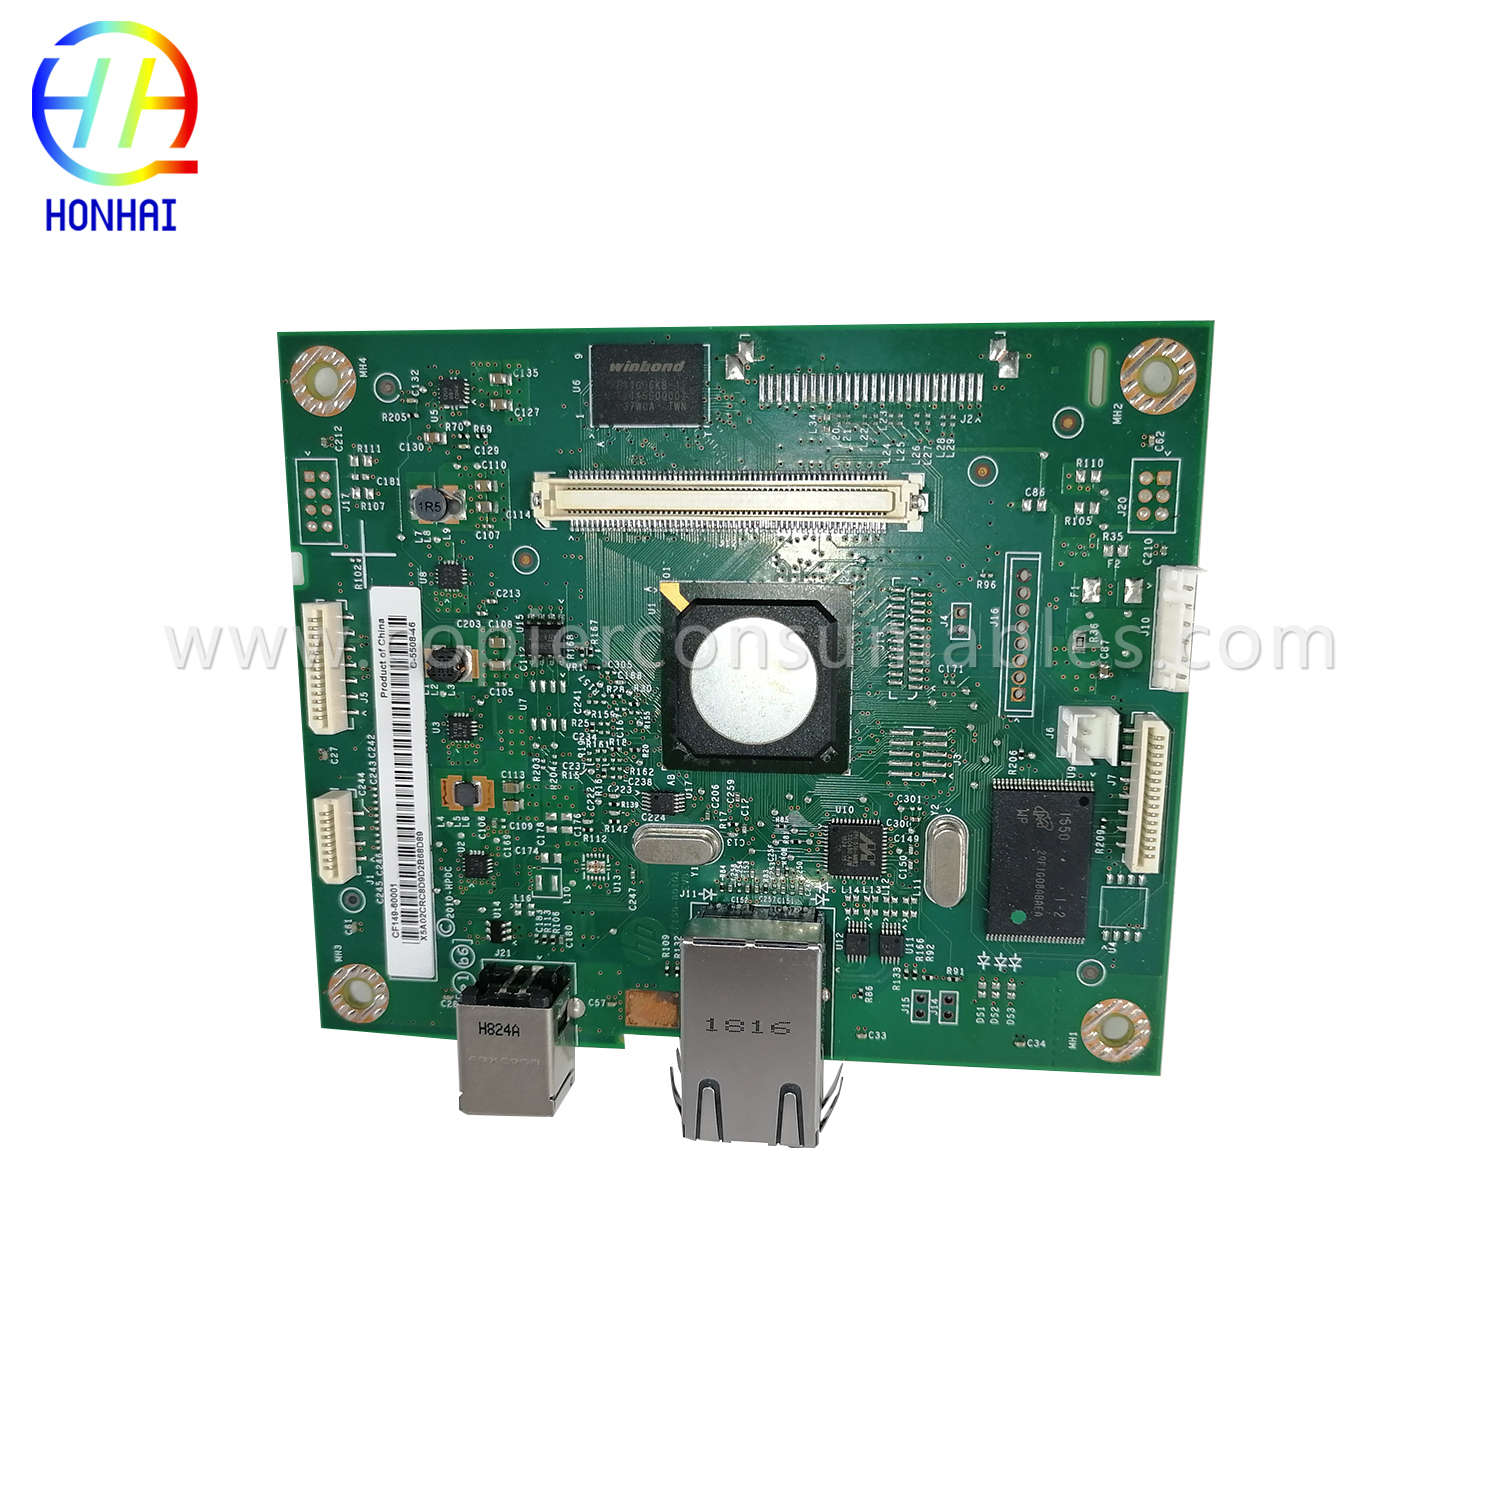 Formatter Board for HP CF149-60001 LaserJet Pro 400 M401